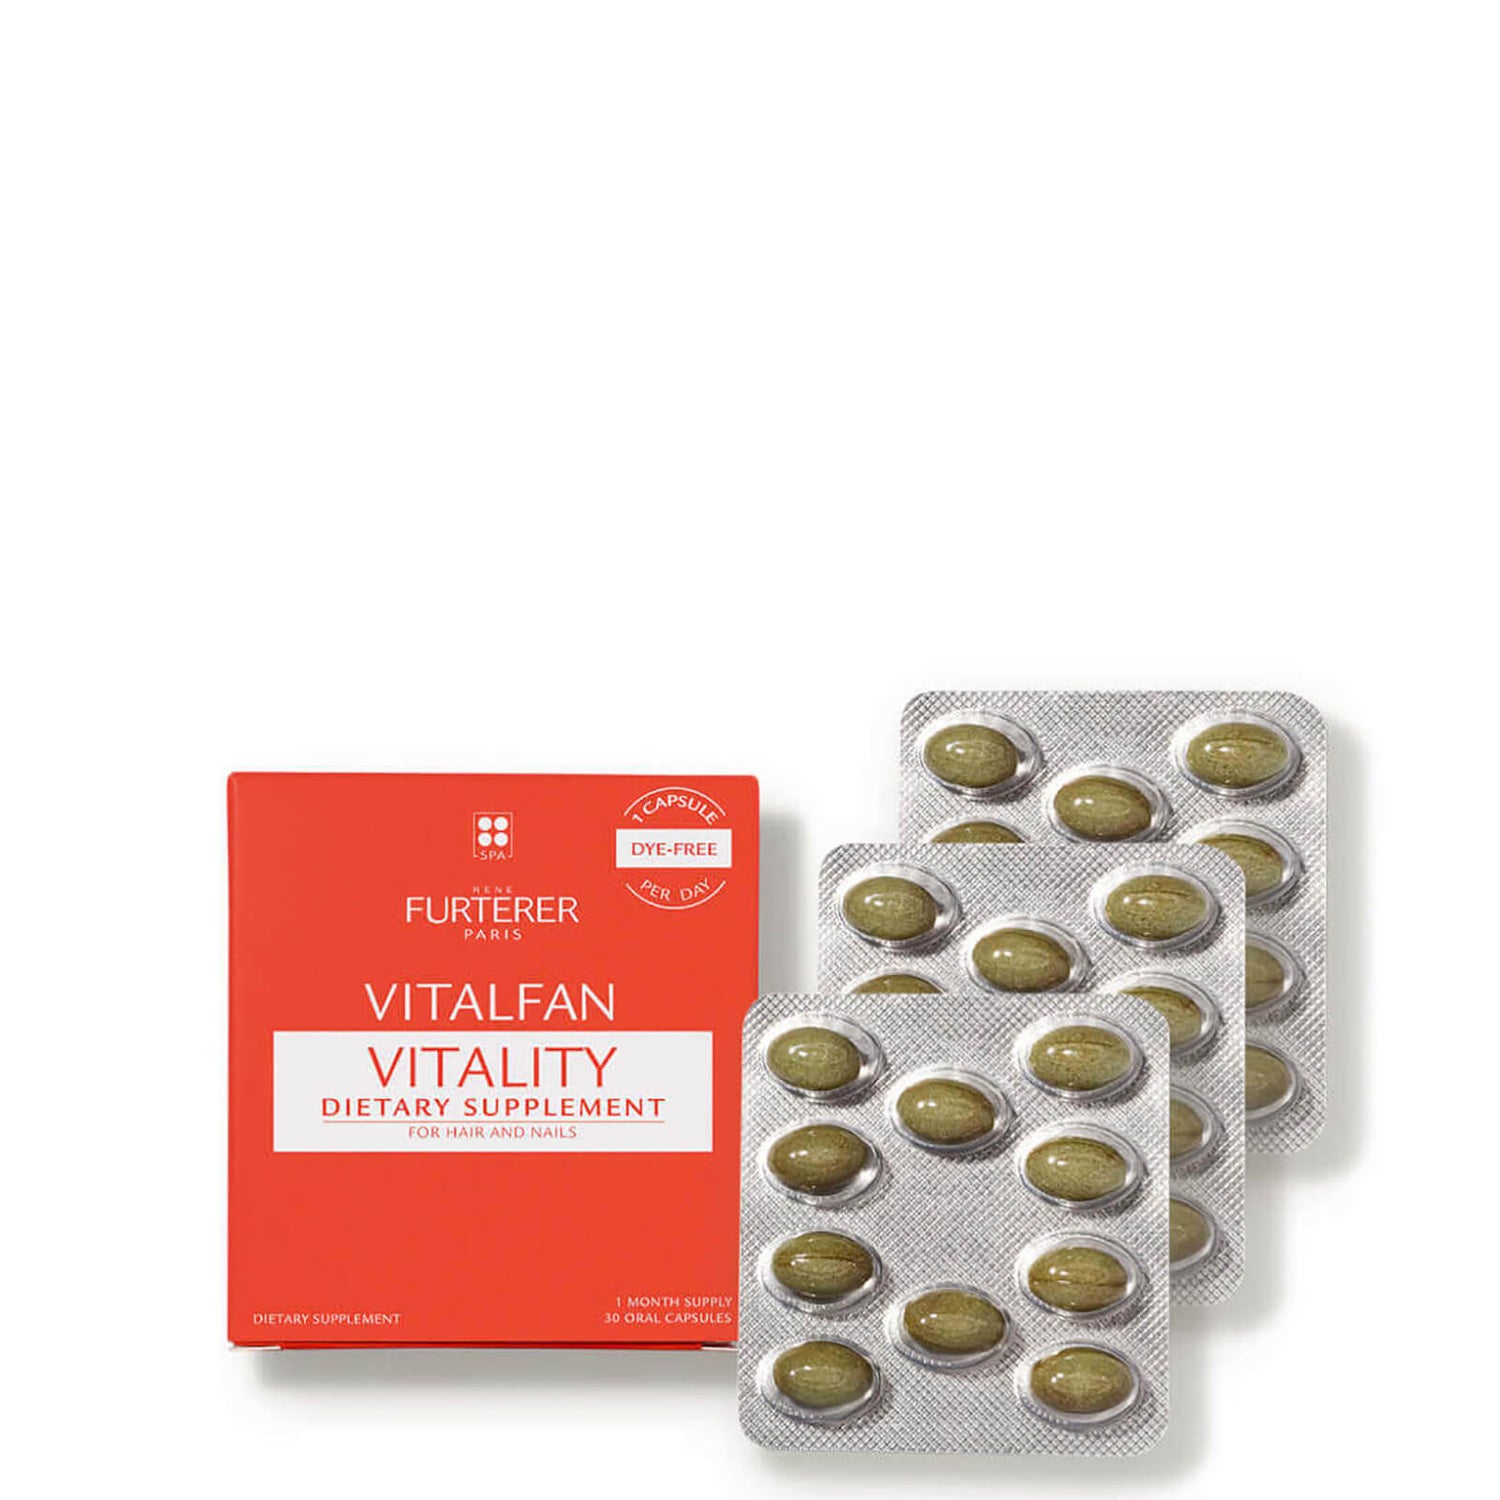 René Furterer VITALFAN Vitality Dietary Supplement (30 capsules)